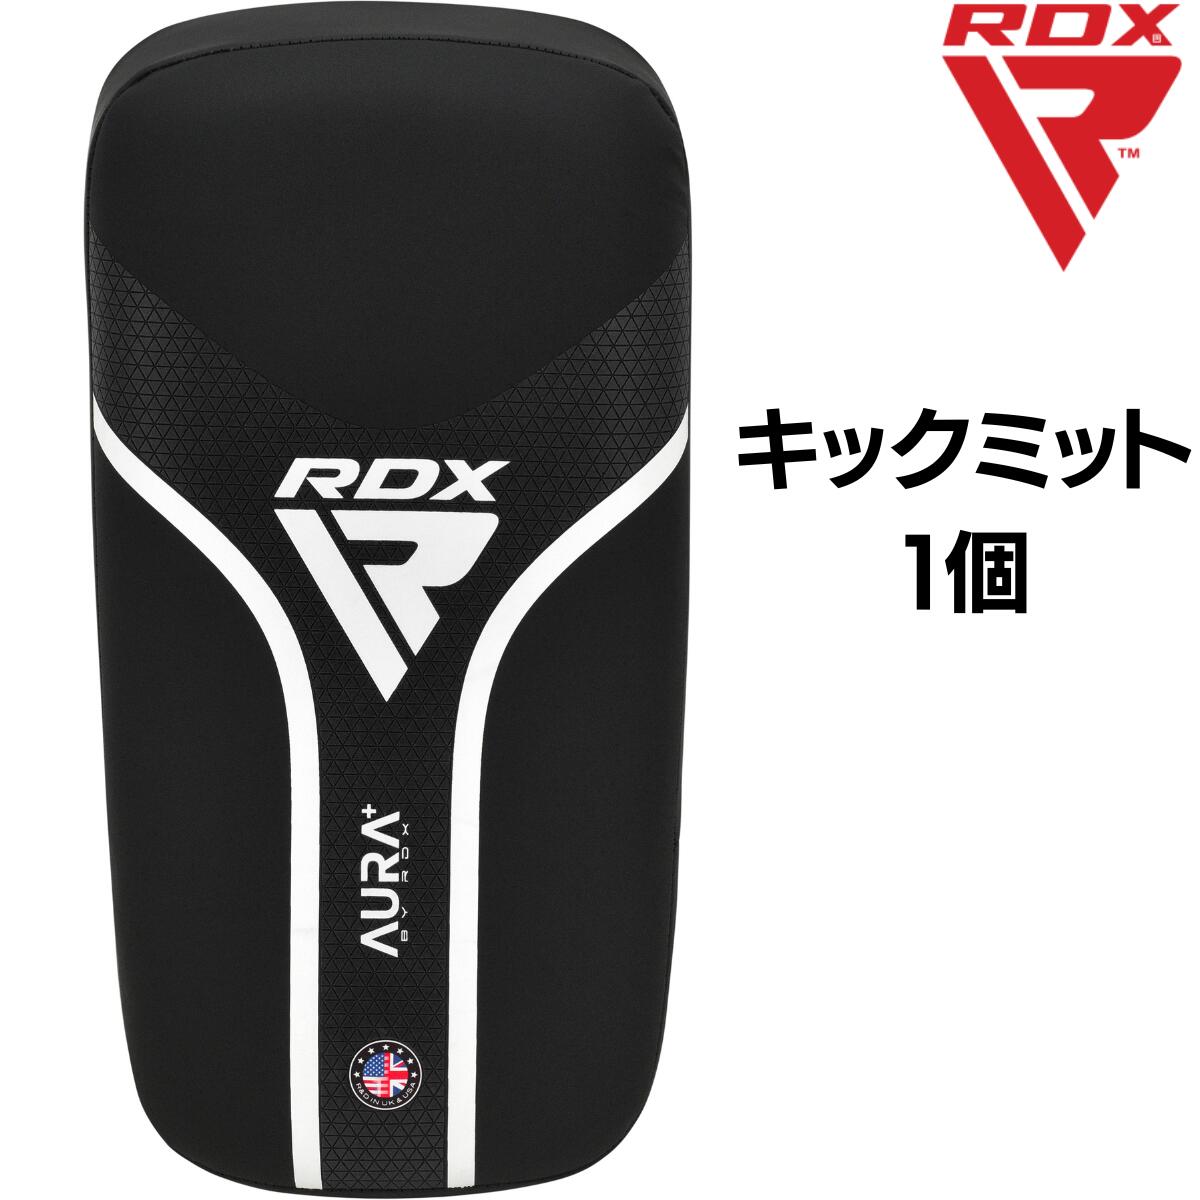 RDX キックミット 1個 AURA+シリーズ キックボクシング 空手 ムエタイ 格闘技 MMA ボクシング ジム トレーニング 耐久性 男性 女性 メンズ レディース 大人 子供 こども キッズ ジュニア ブラック T17 あす楽 送料無料